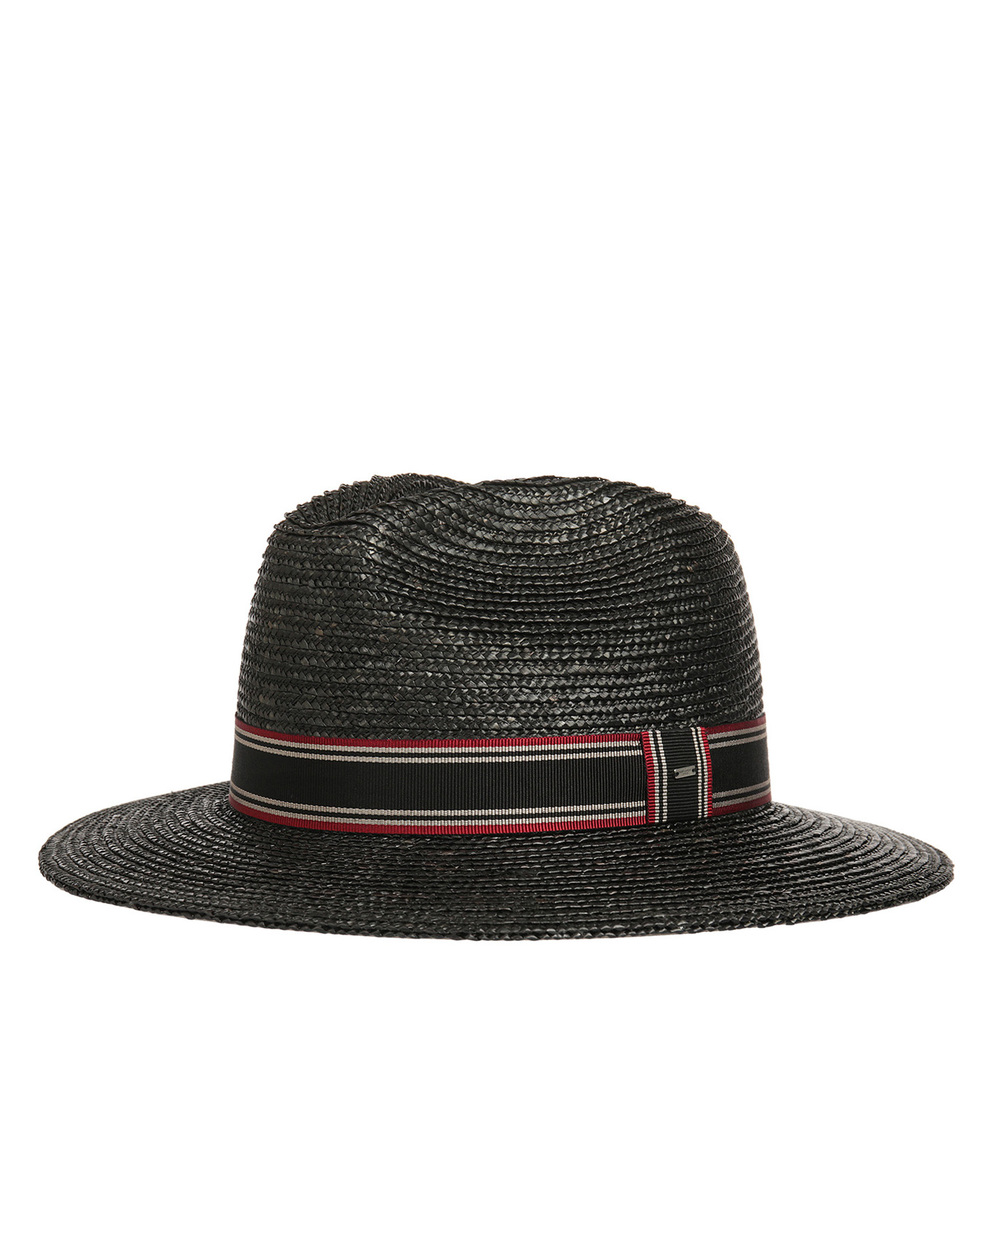 Шляпа Saint Laurent 608759-3YB83, черный цвет • Купить в интернет-магазине Kameron